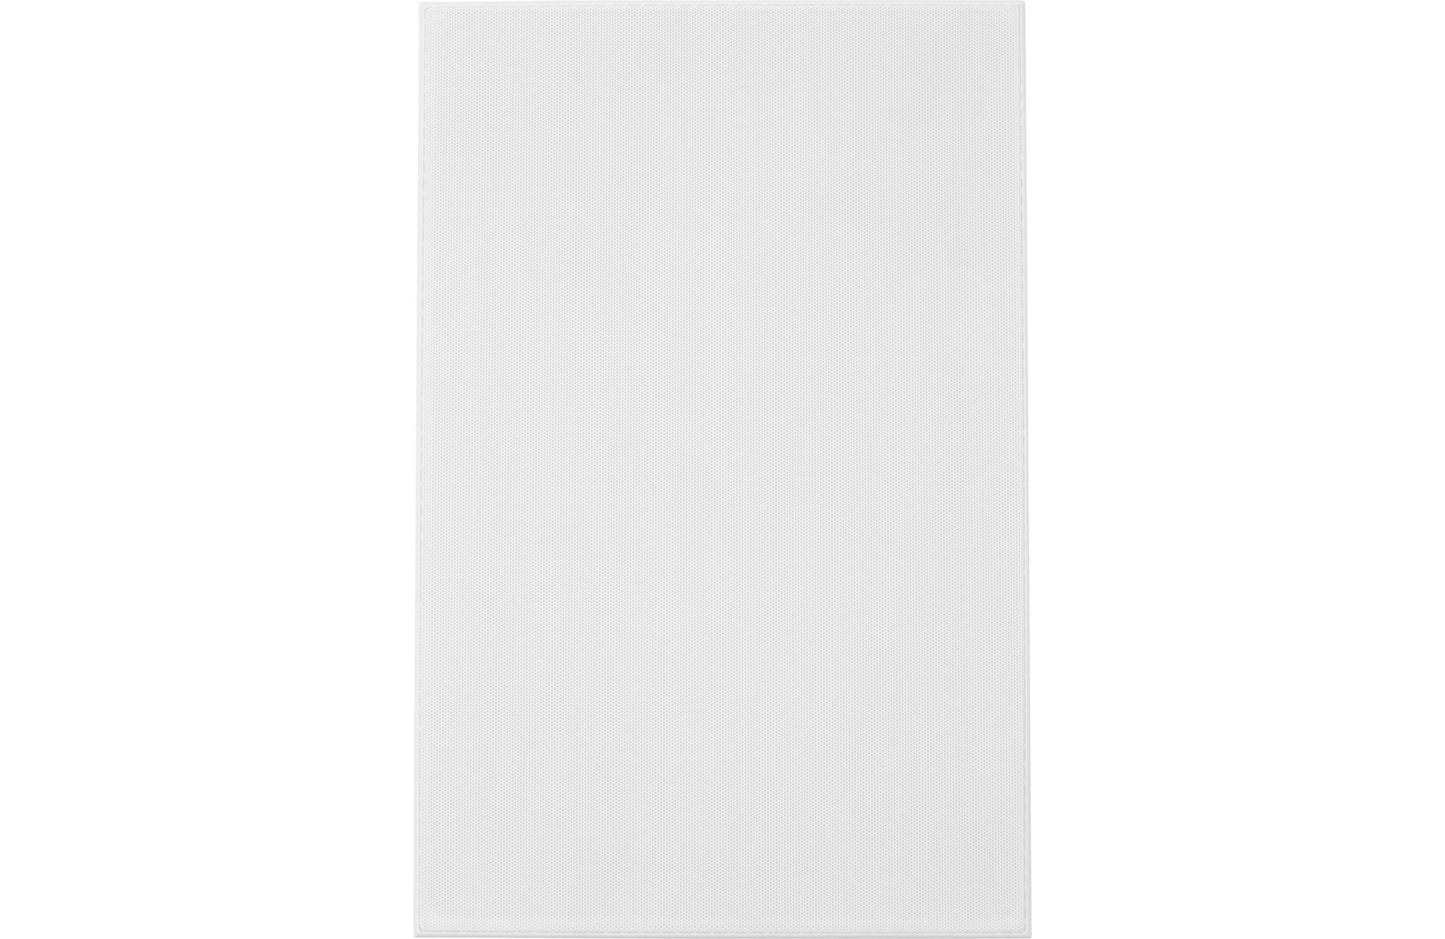 Klipsch R-3650-W II Two-Way In-Wall Home Theater Speaker - Each (White) 1014130